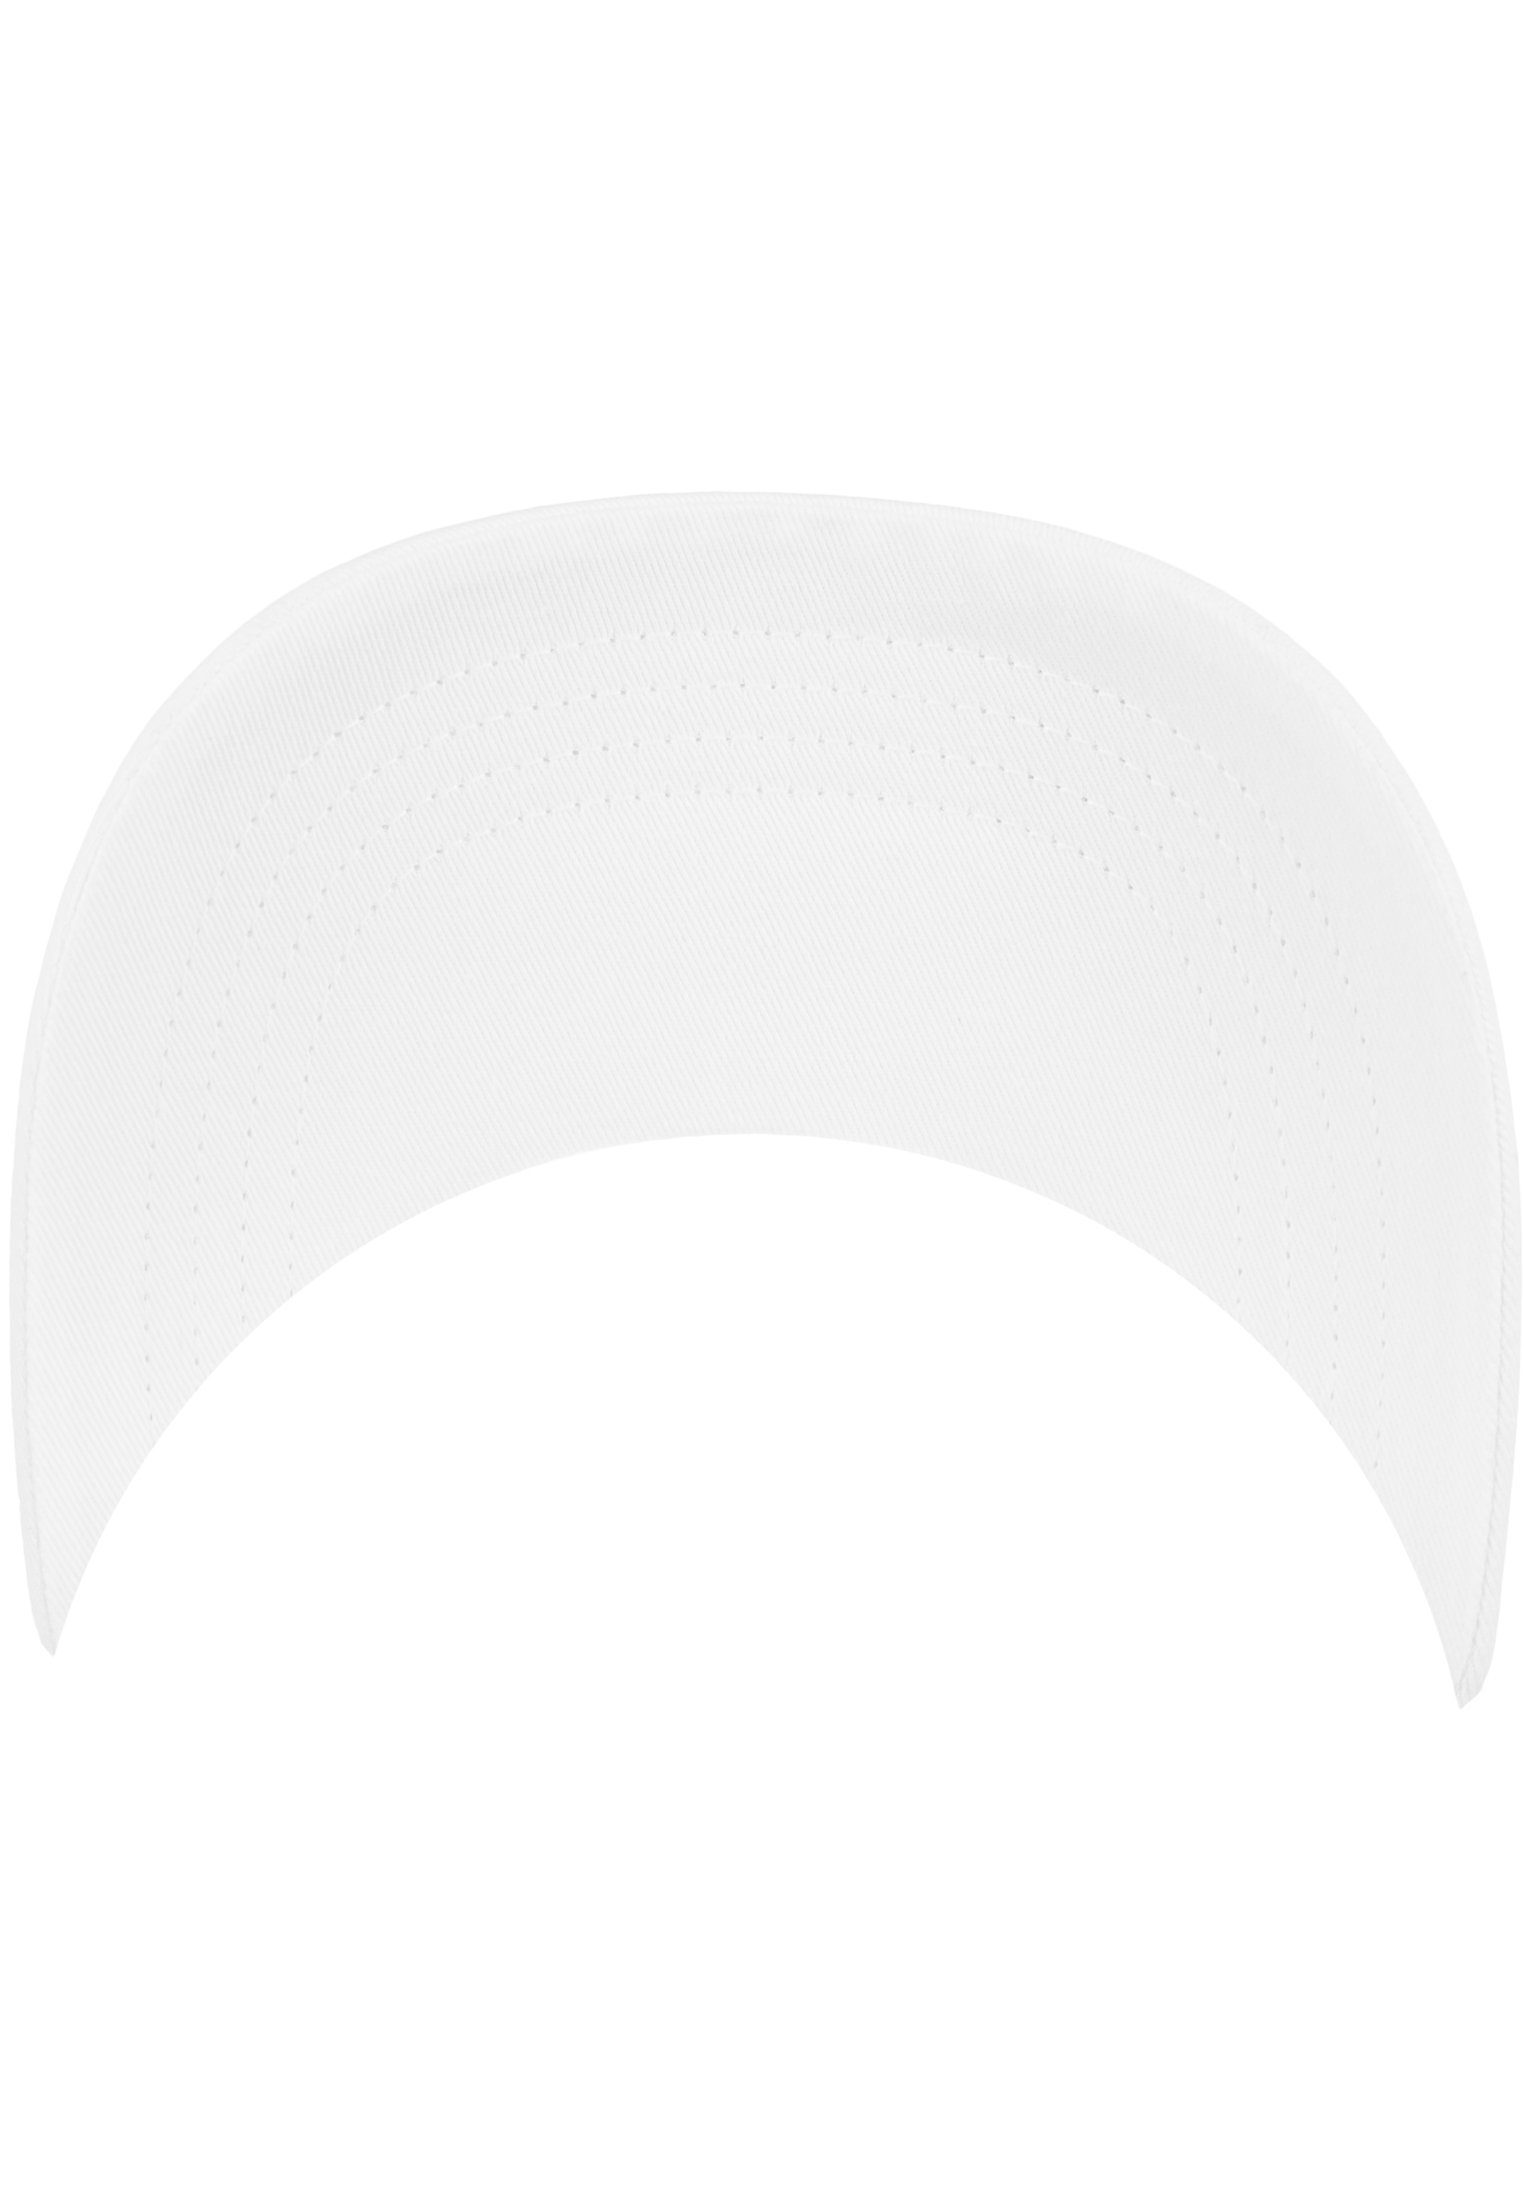 Flex Flexfit Twill 6245CM Cotton Cap Low Profile White Flexfit